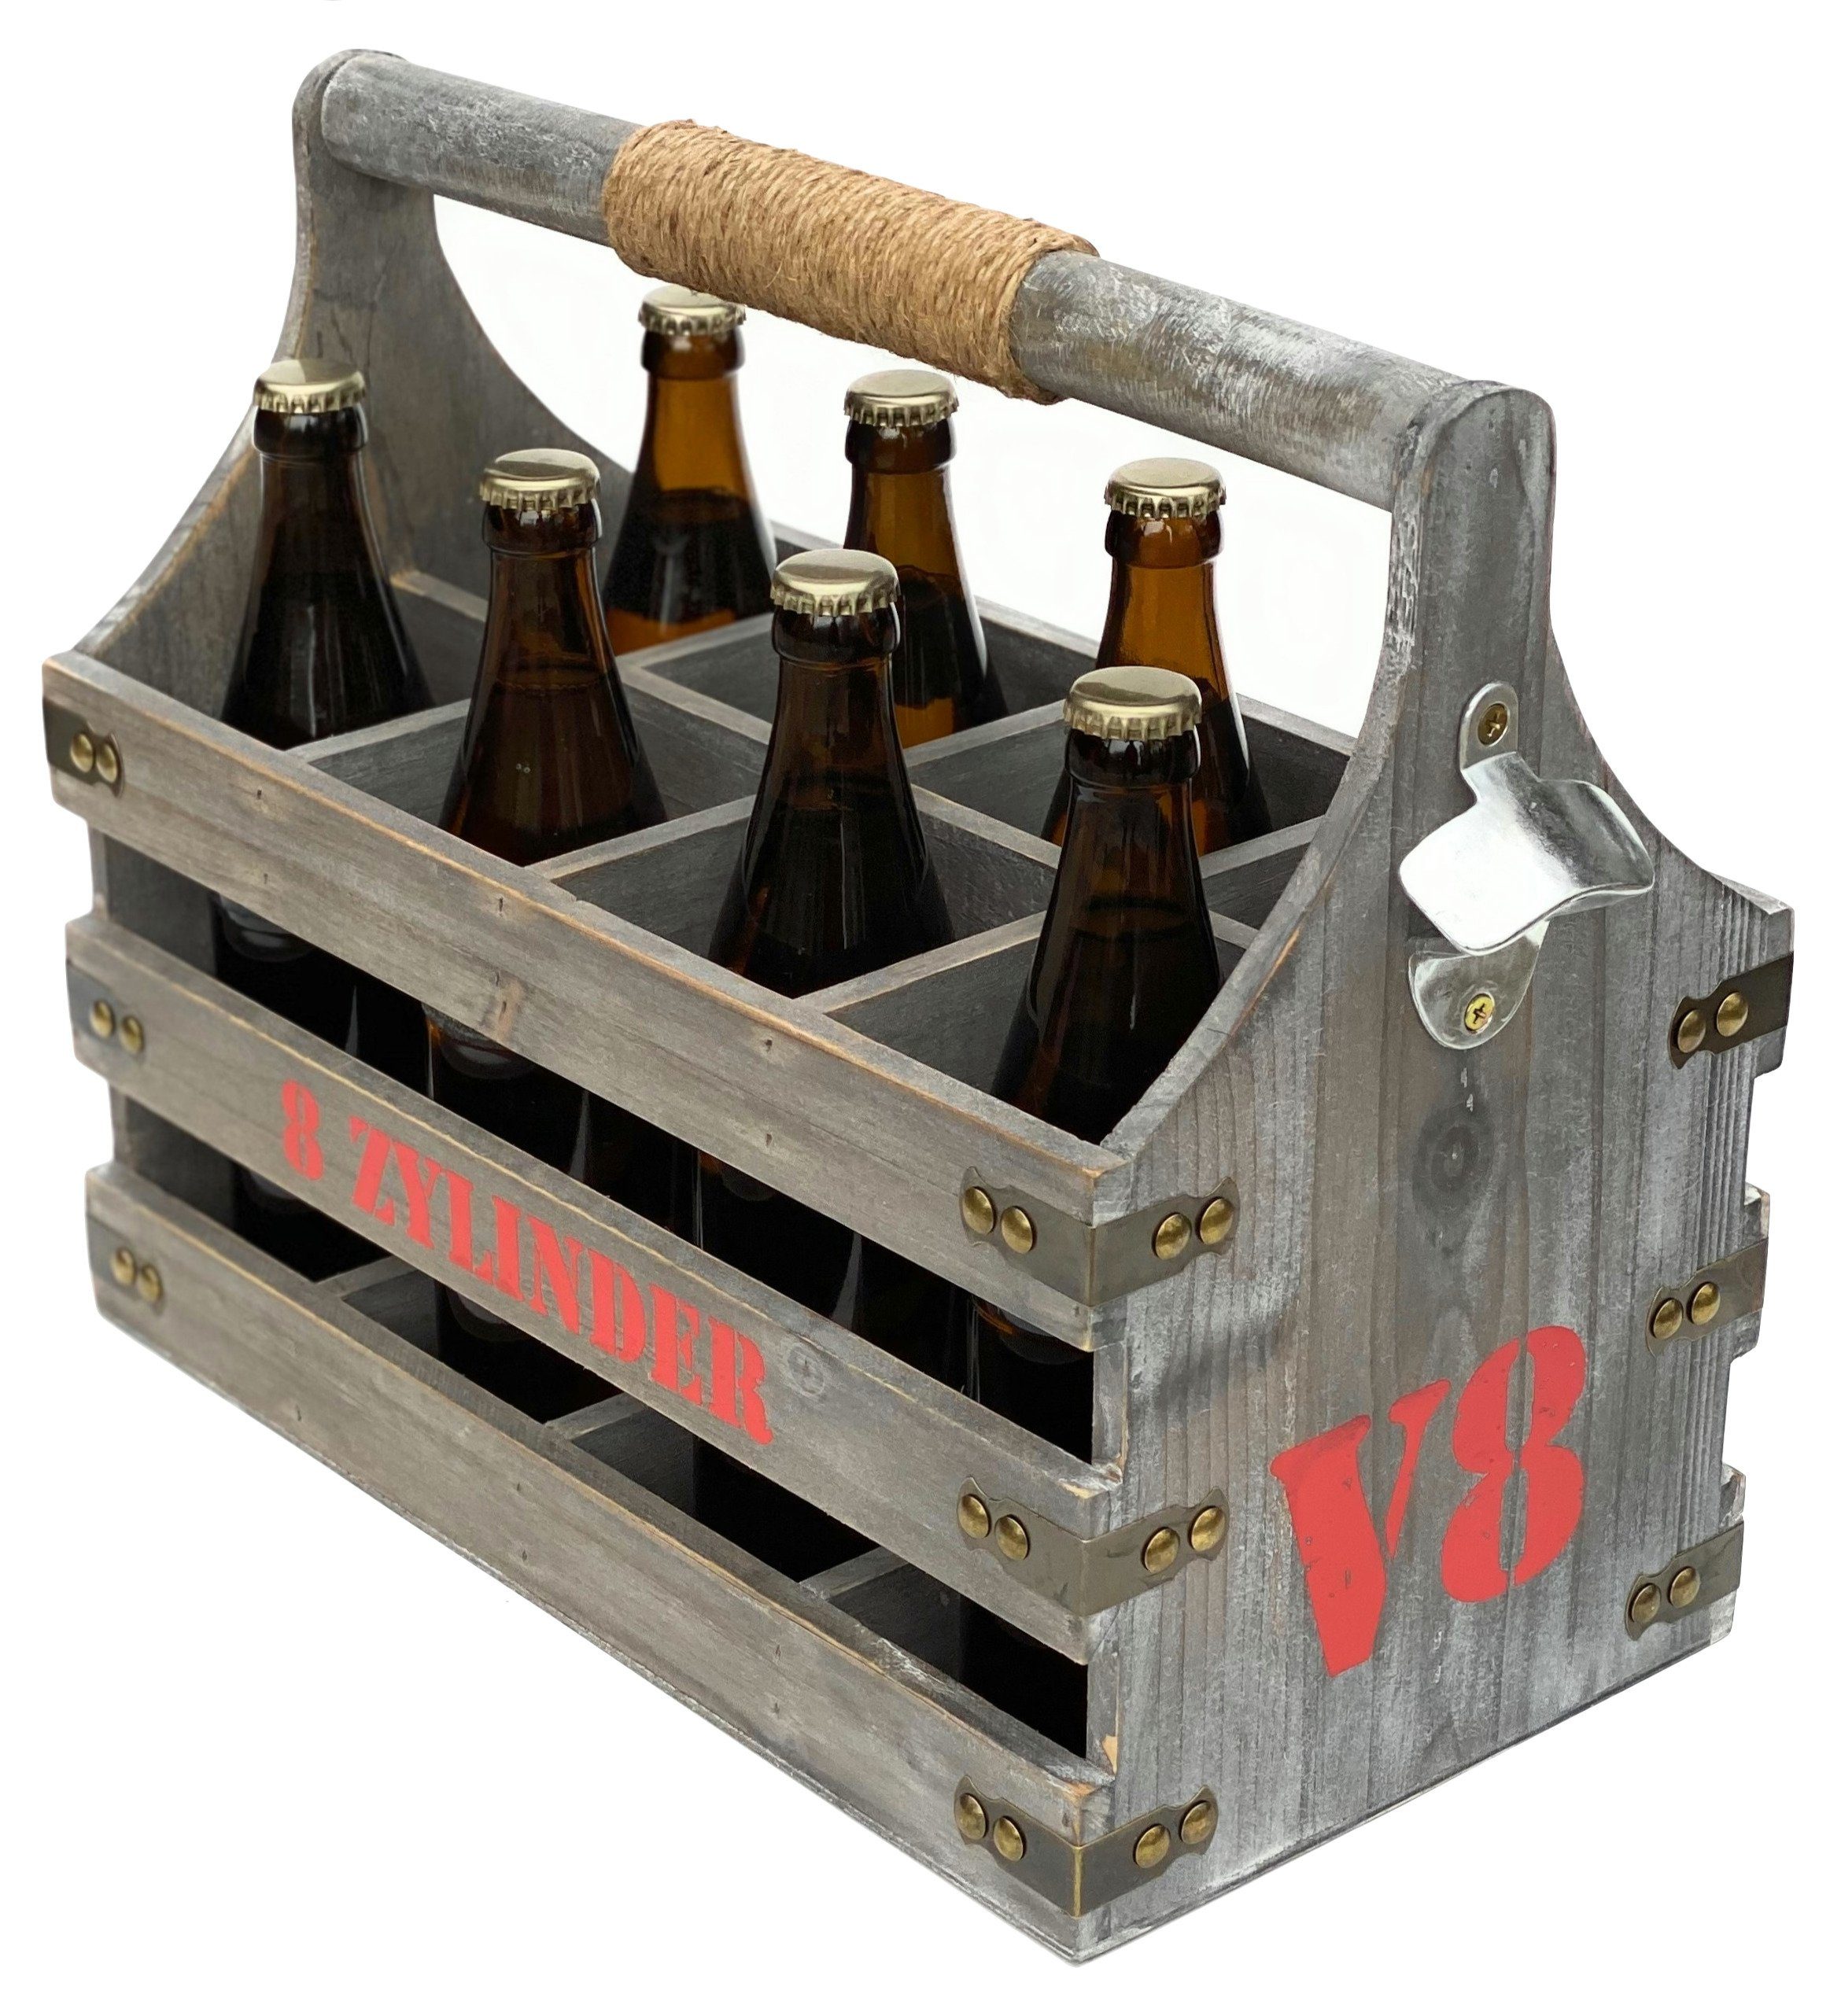 Flache Box mit Bierhalter